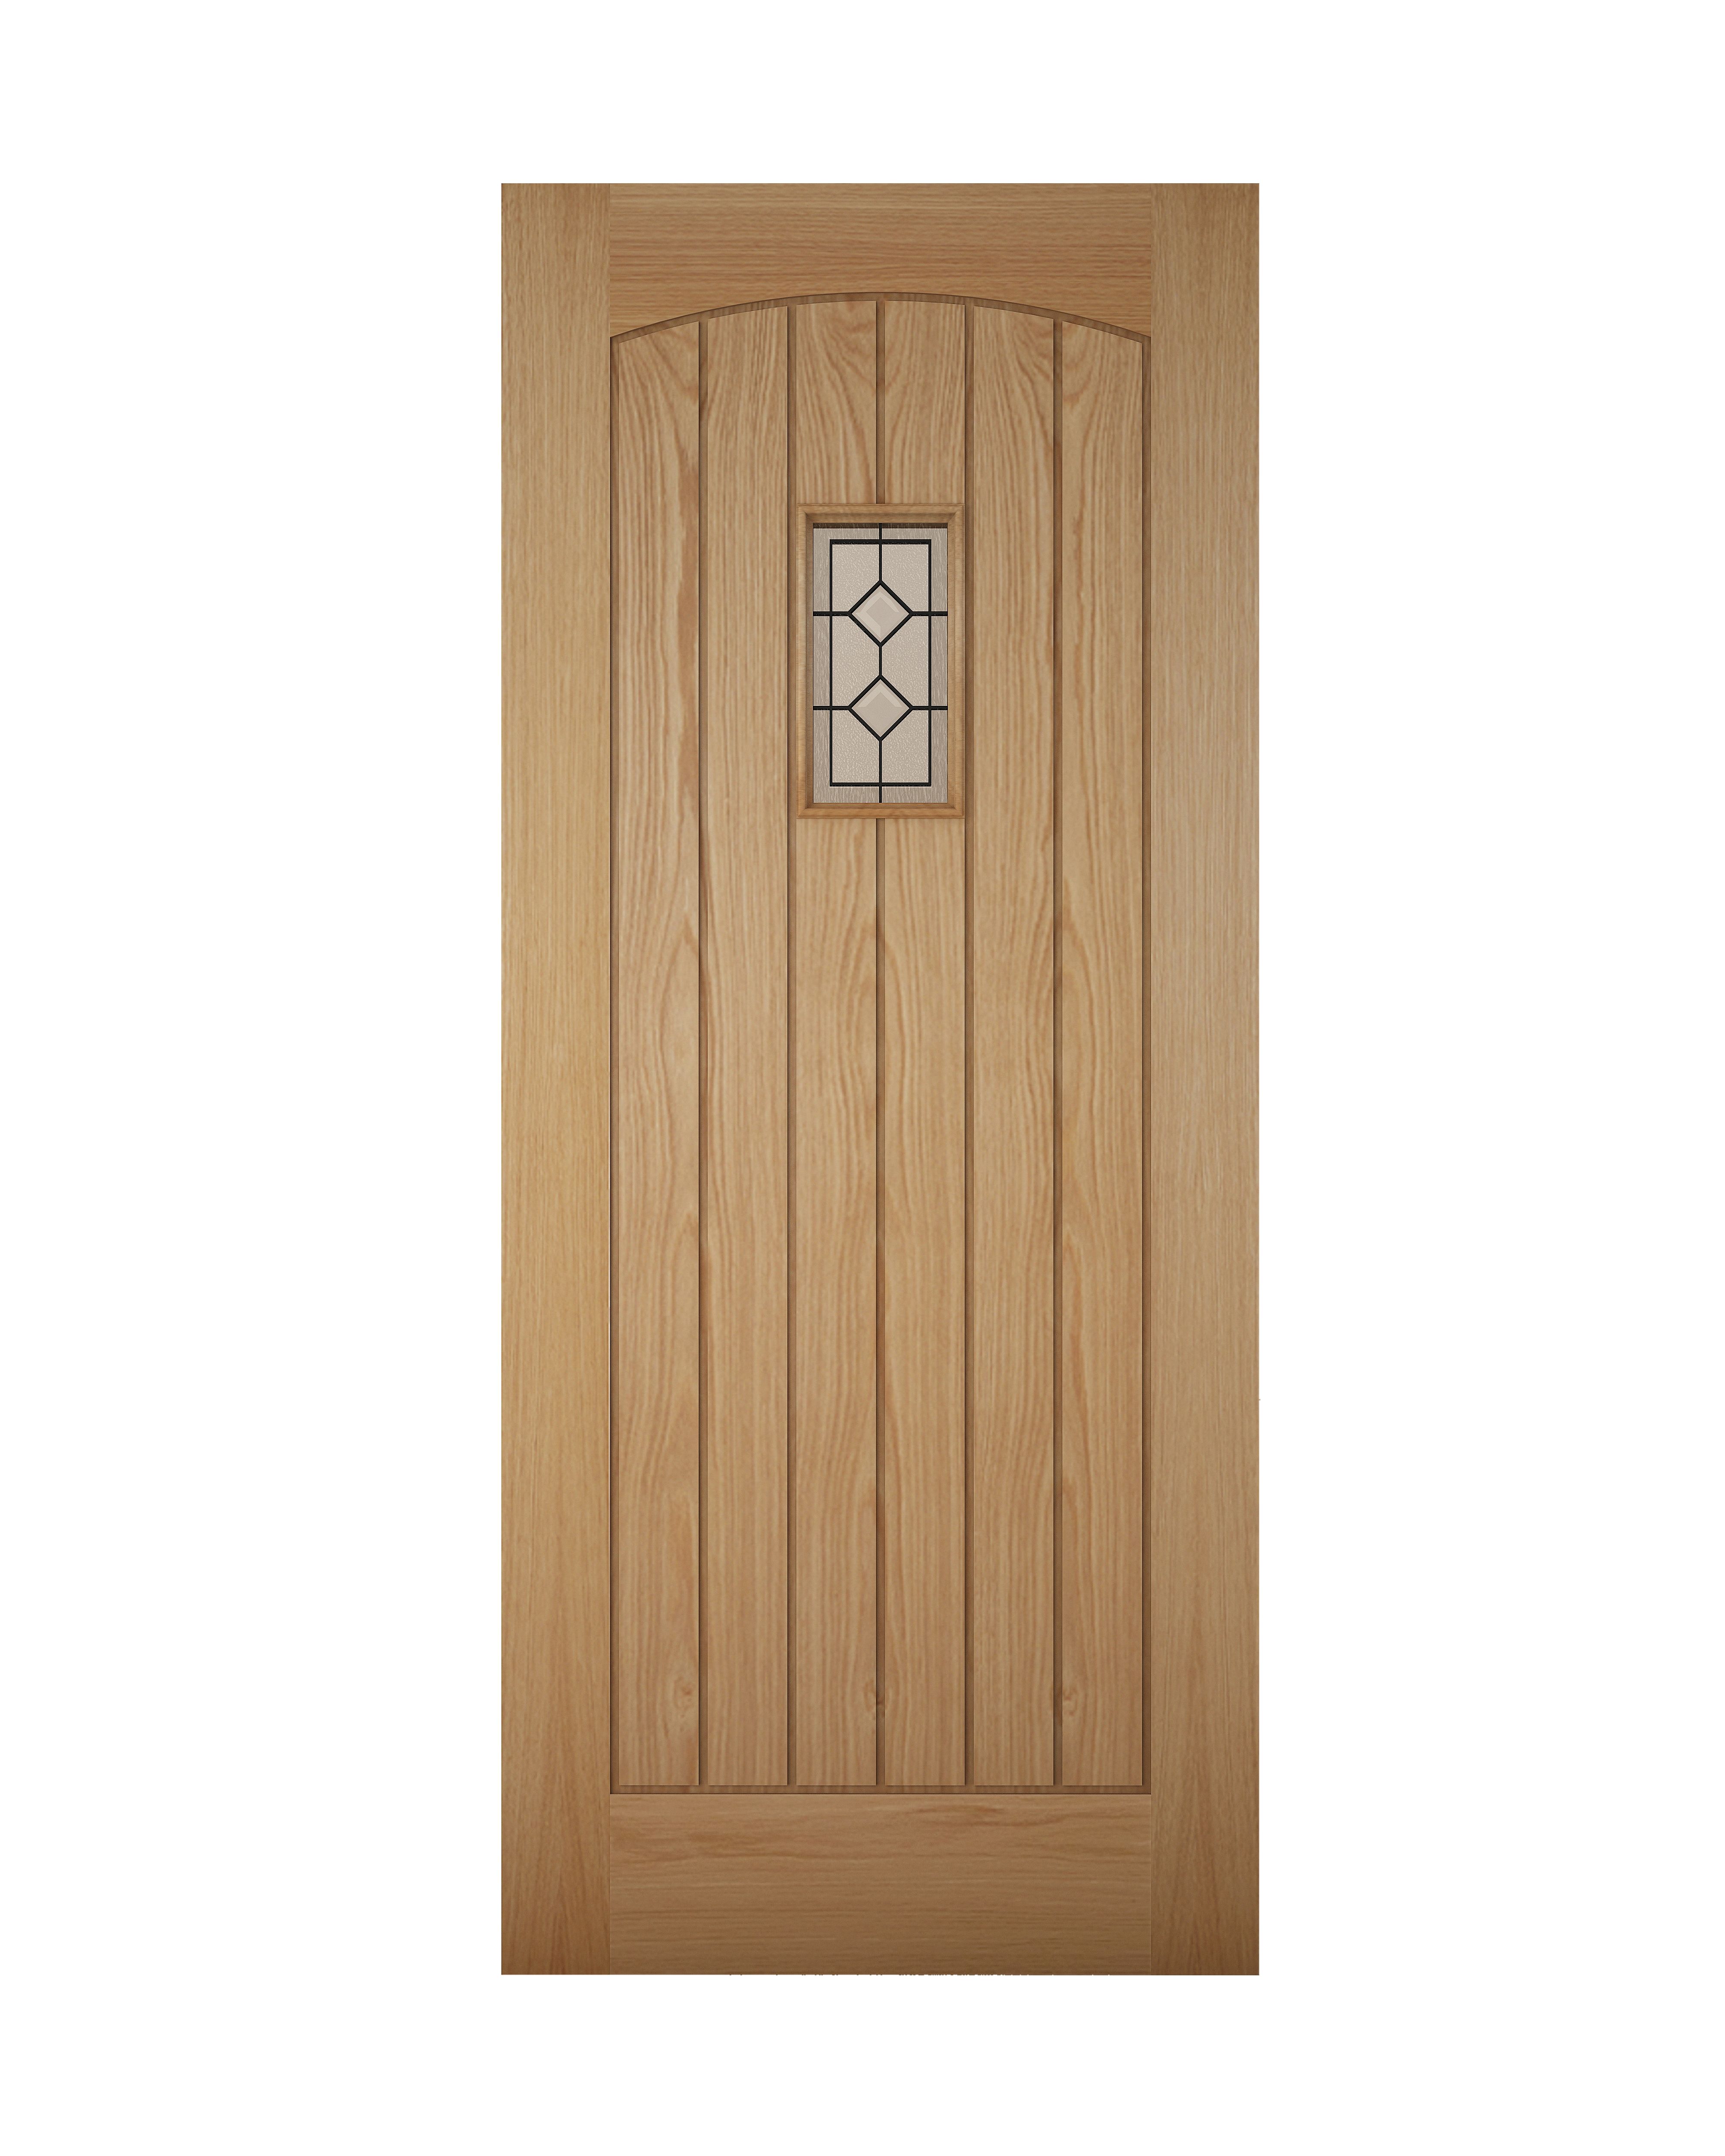 Geom Glazed Cottage White oak veneer Left & RHed Front door, (H)1981mm (W)838mm